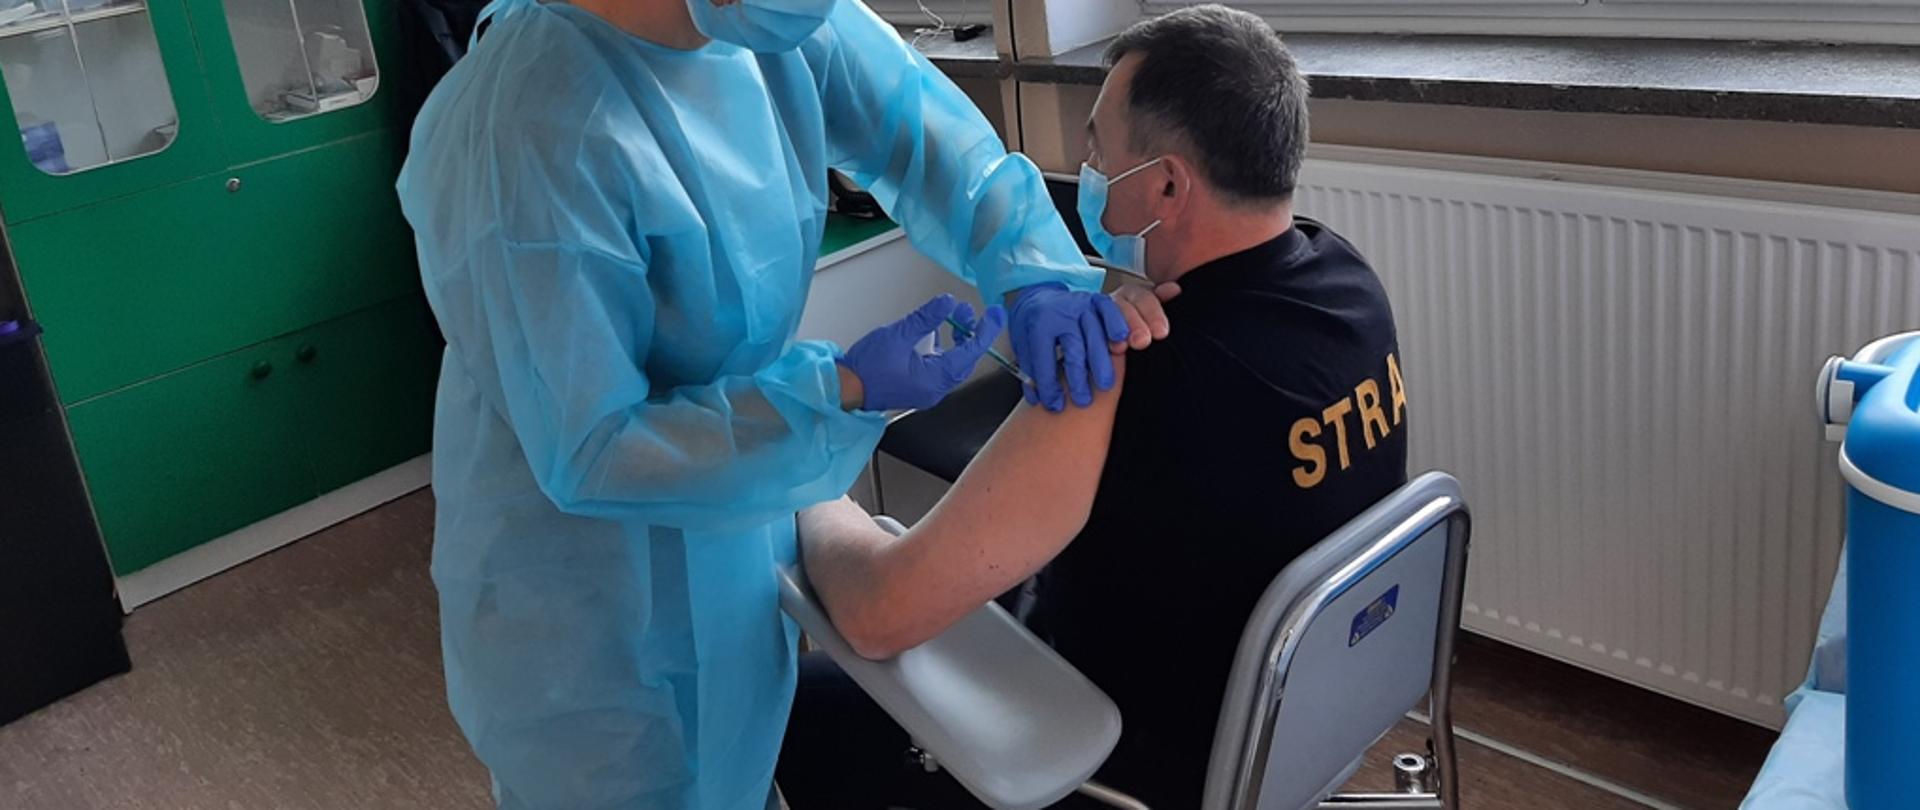 Kolorowa fotografia przedstawia na pierwszym planie strażaka w czarnej koszulce z napisem na plecach STRAŻ, siedzącego na krześle, któremu pielęgniarka podaje szczepionkę. W tle widok gabinetu szczepień.